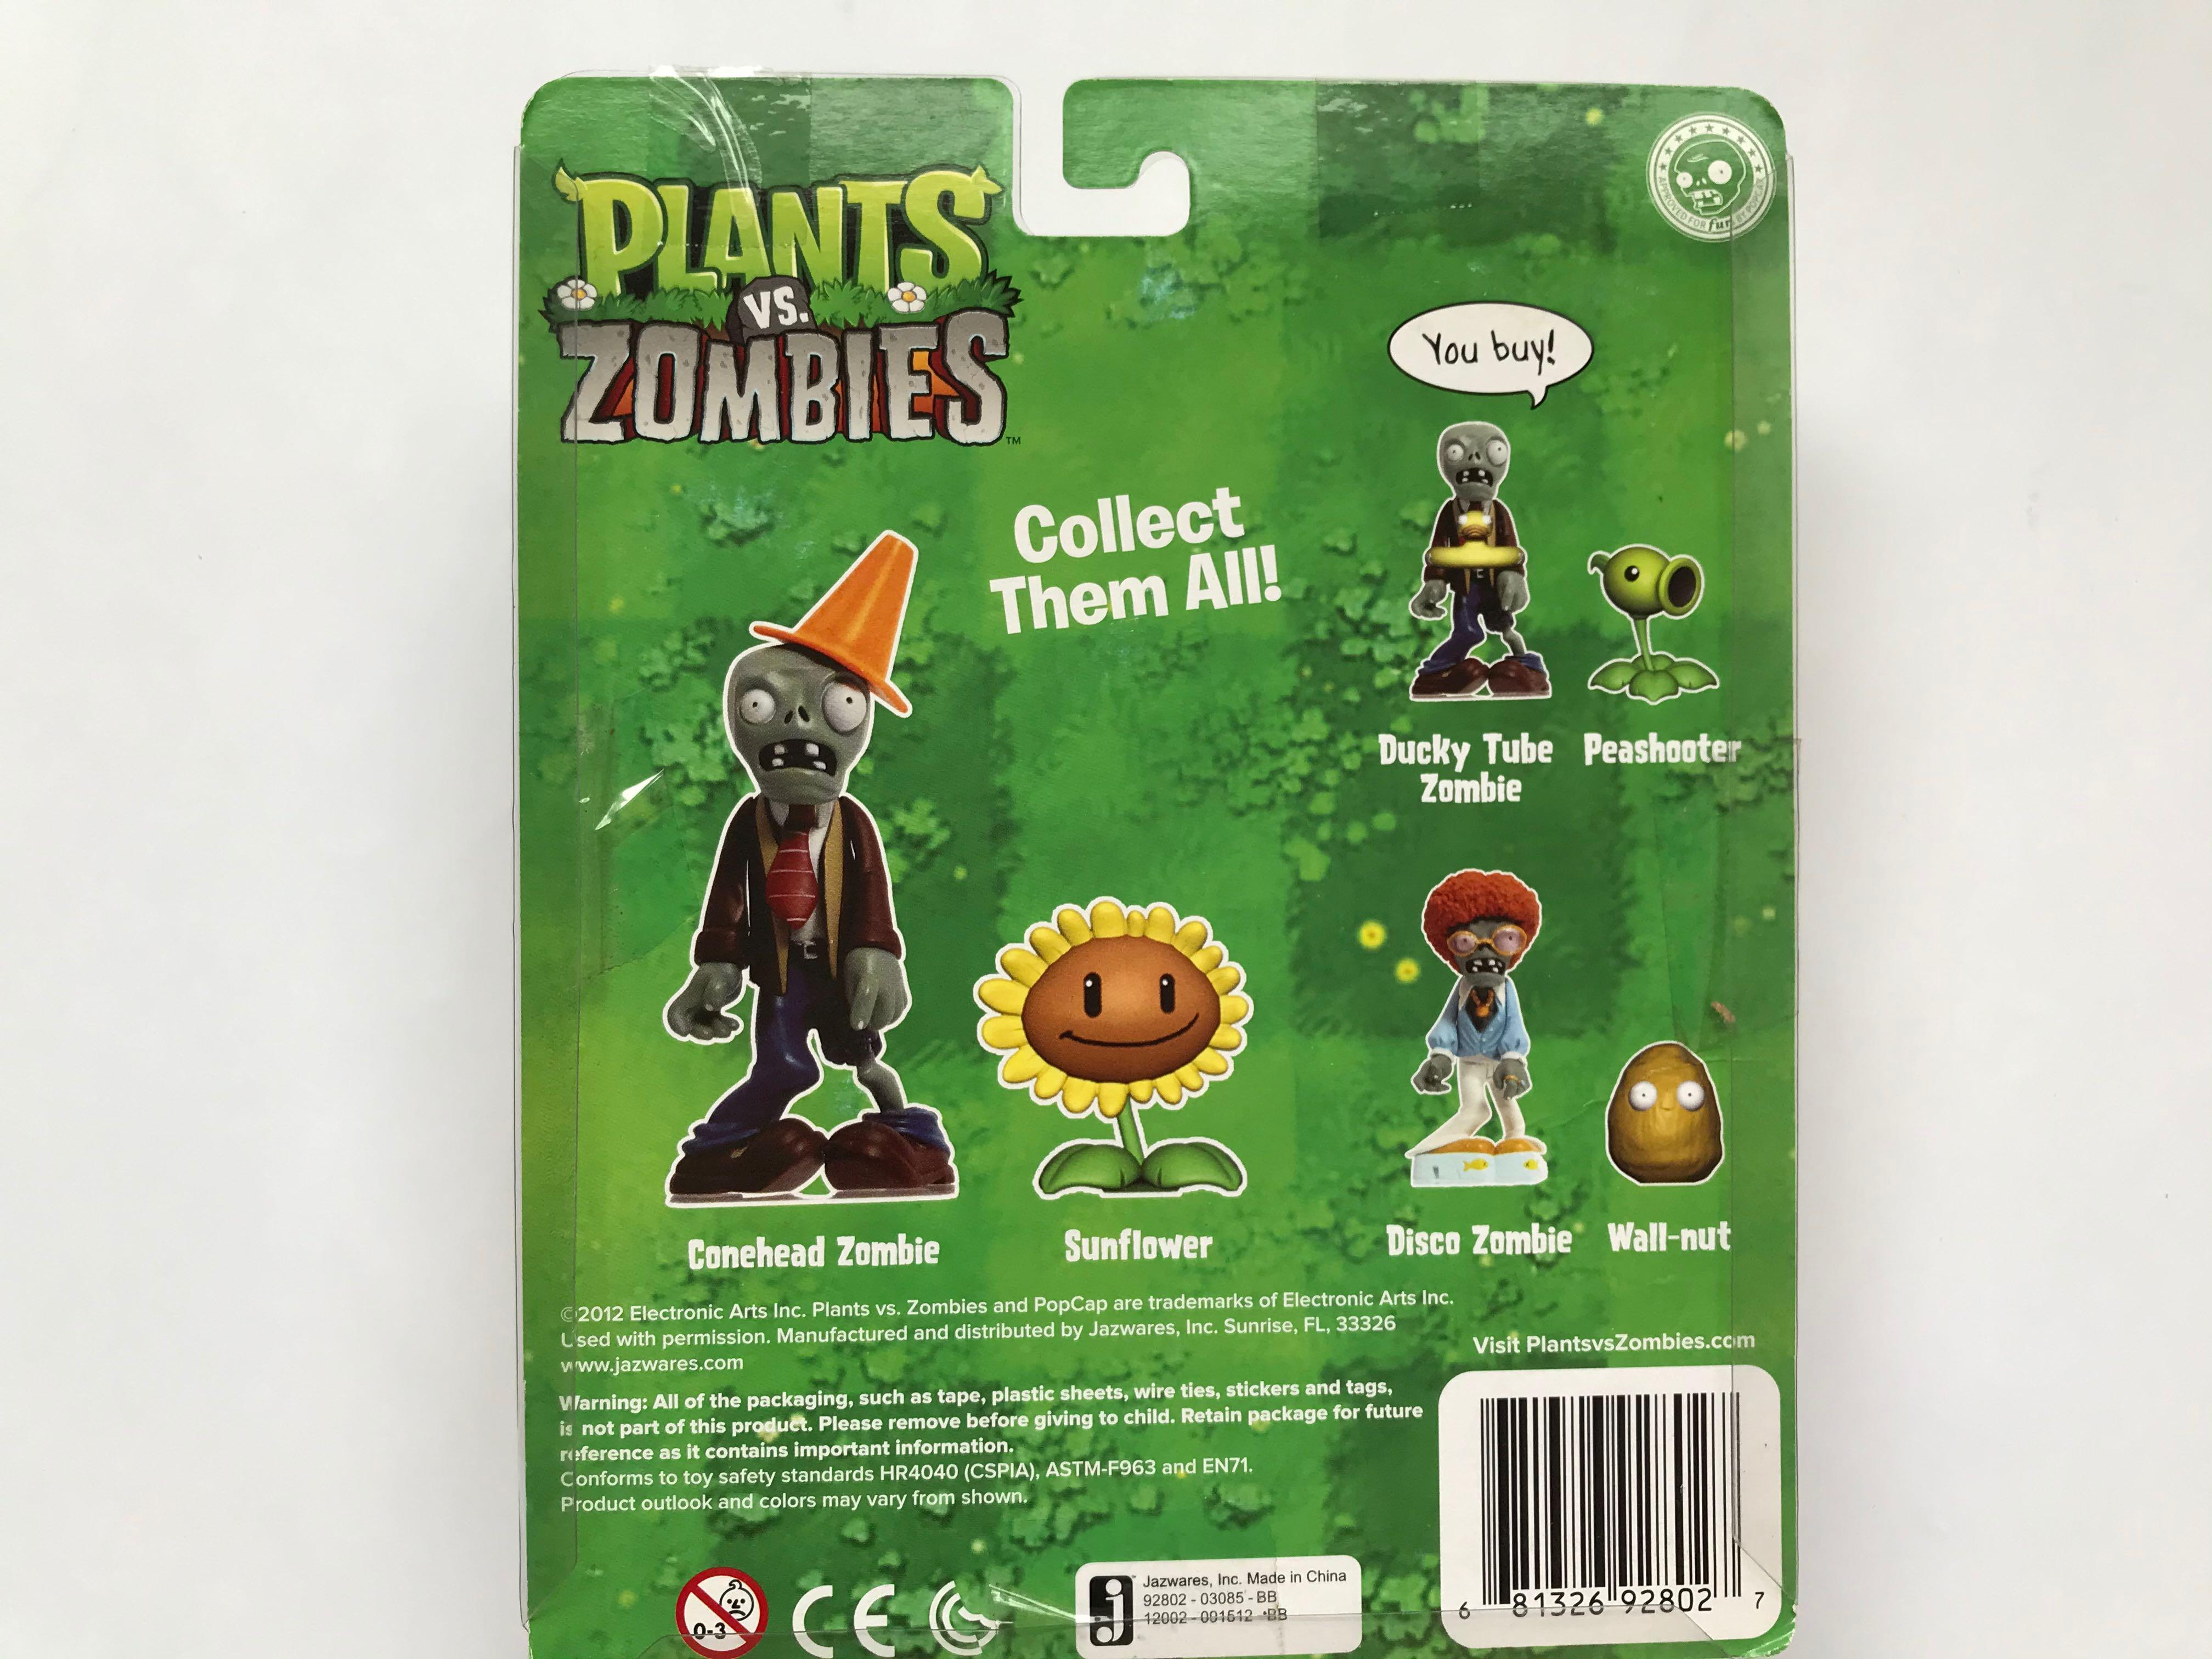 Plants vs. Zombies Fun-Dead Figures Disco Zombie & Wallnut Figure